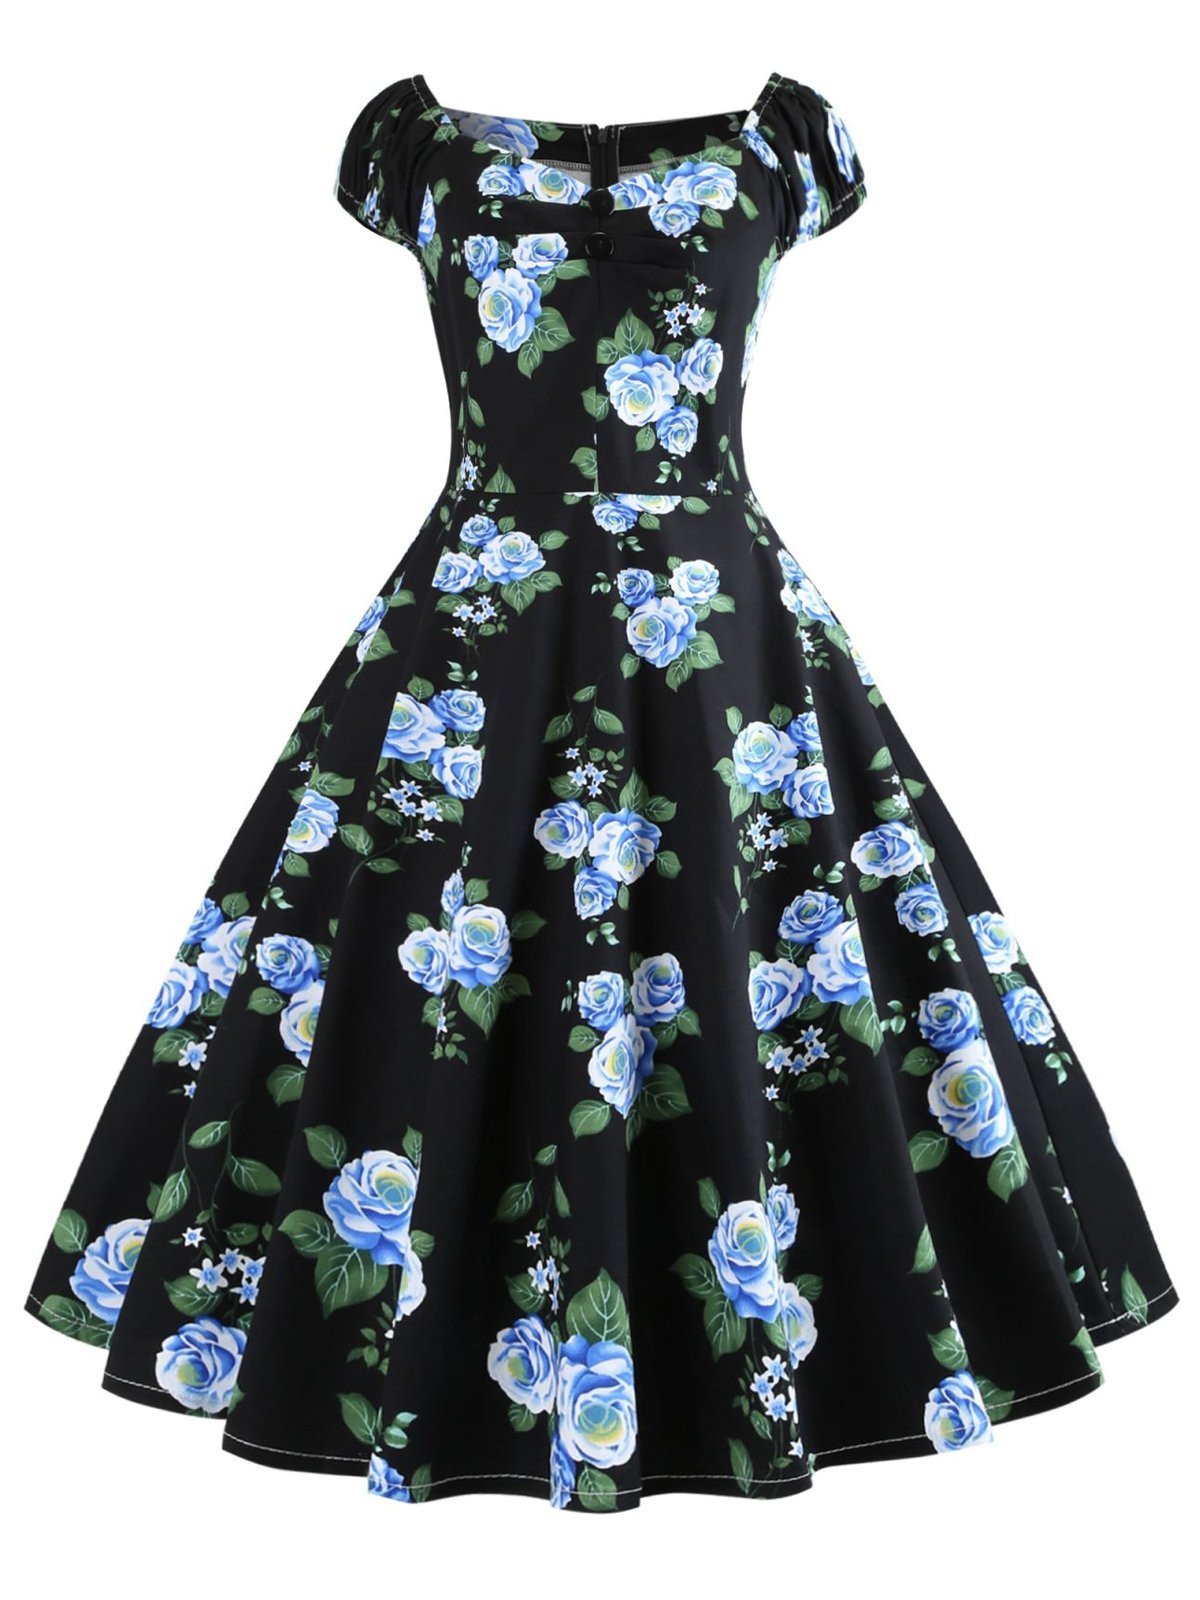 1950s Inspired Rose Swing Dress